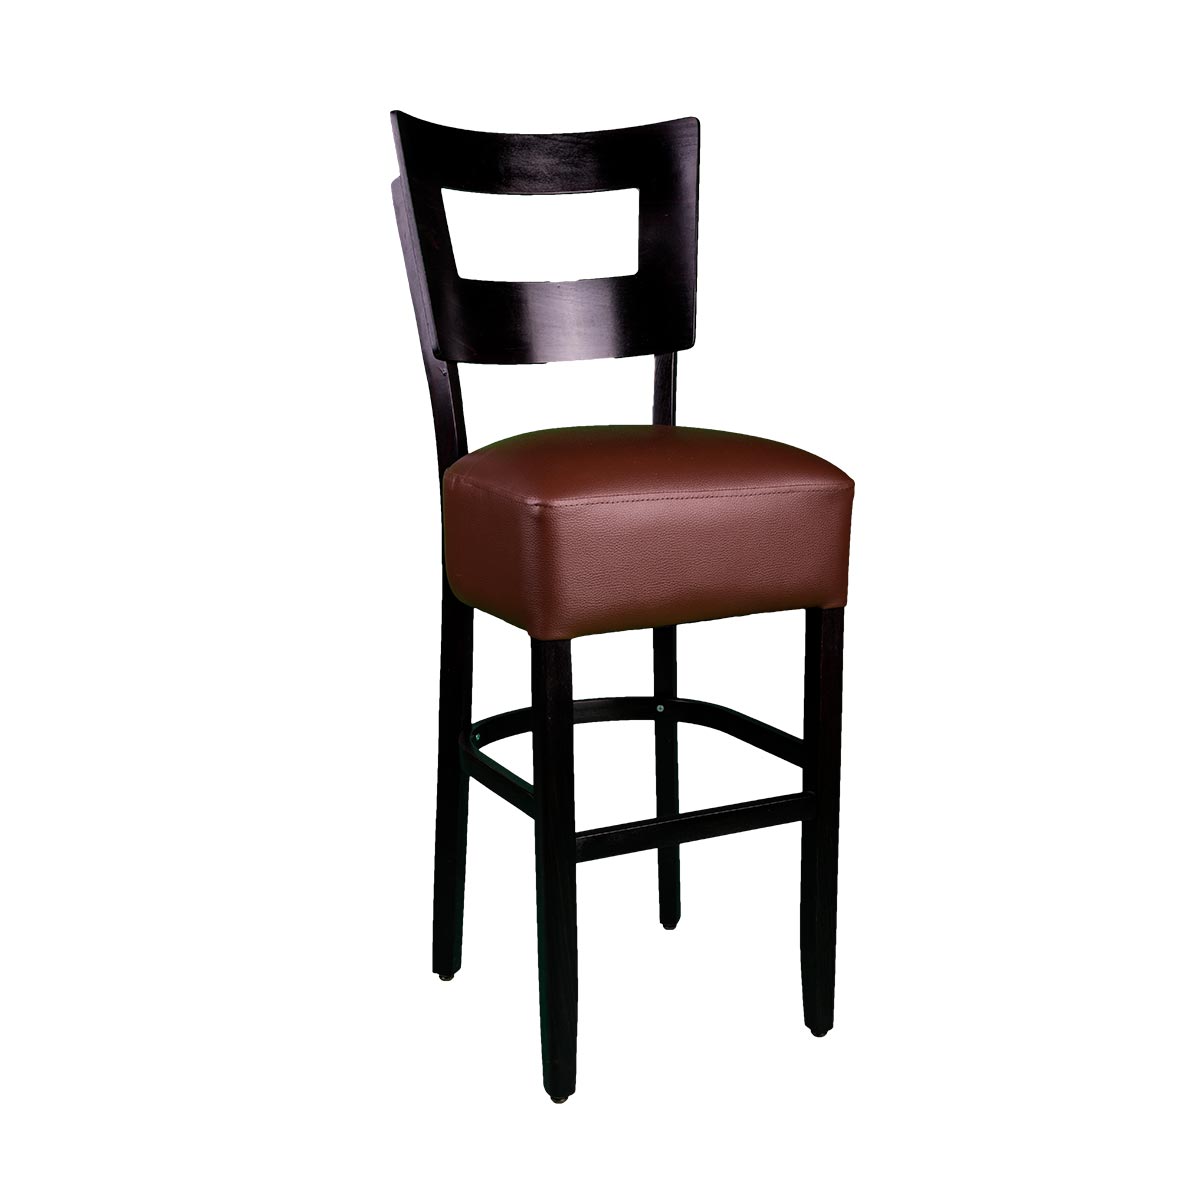 Detal barske stolice